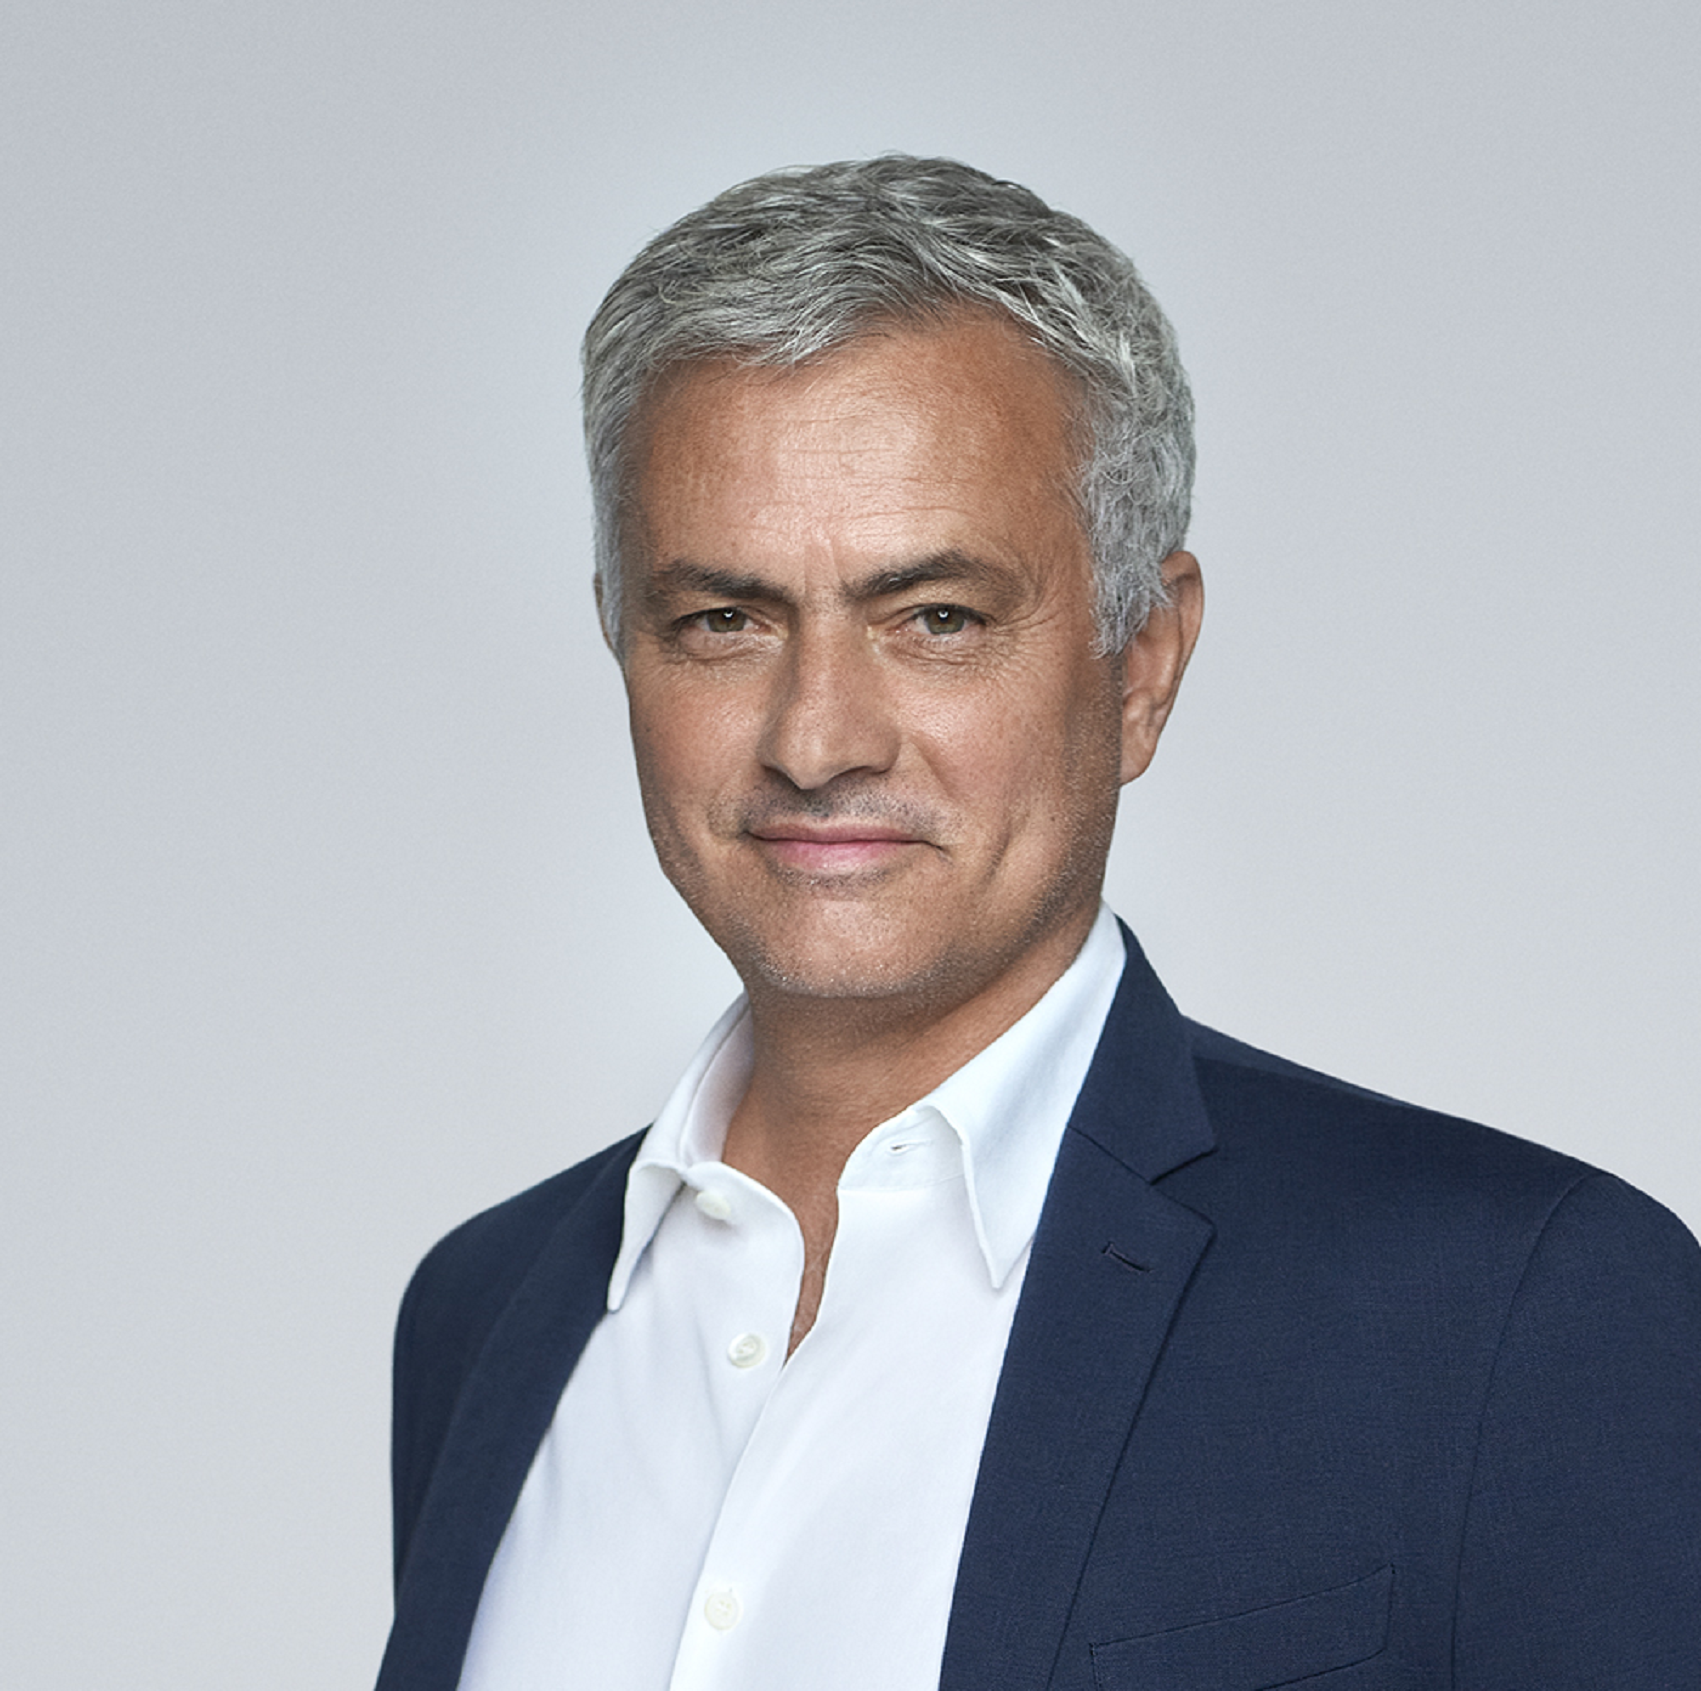 XTB ohlašuje partnerství s José Mourinhem a zavádí 0% poplatky za fyzické akcie a ETF